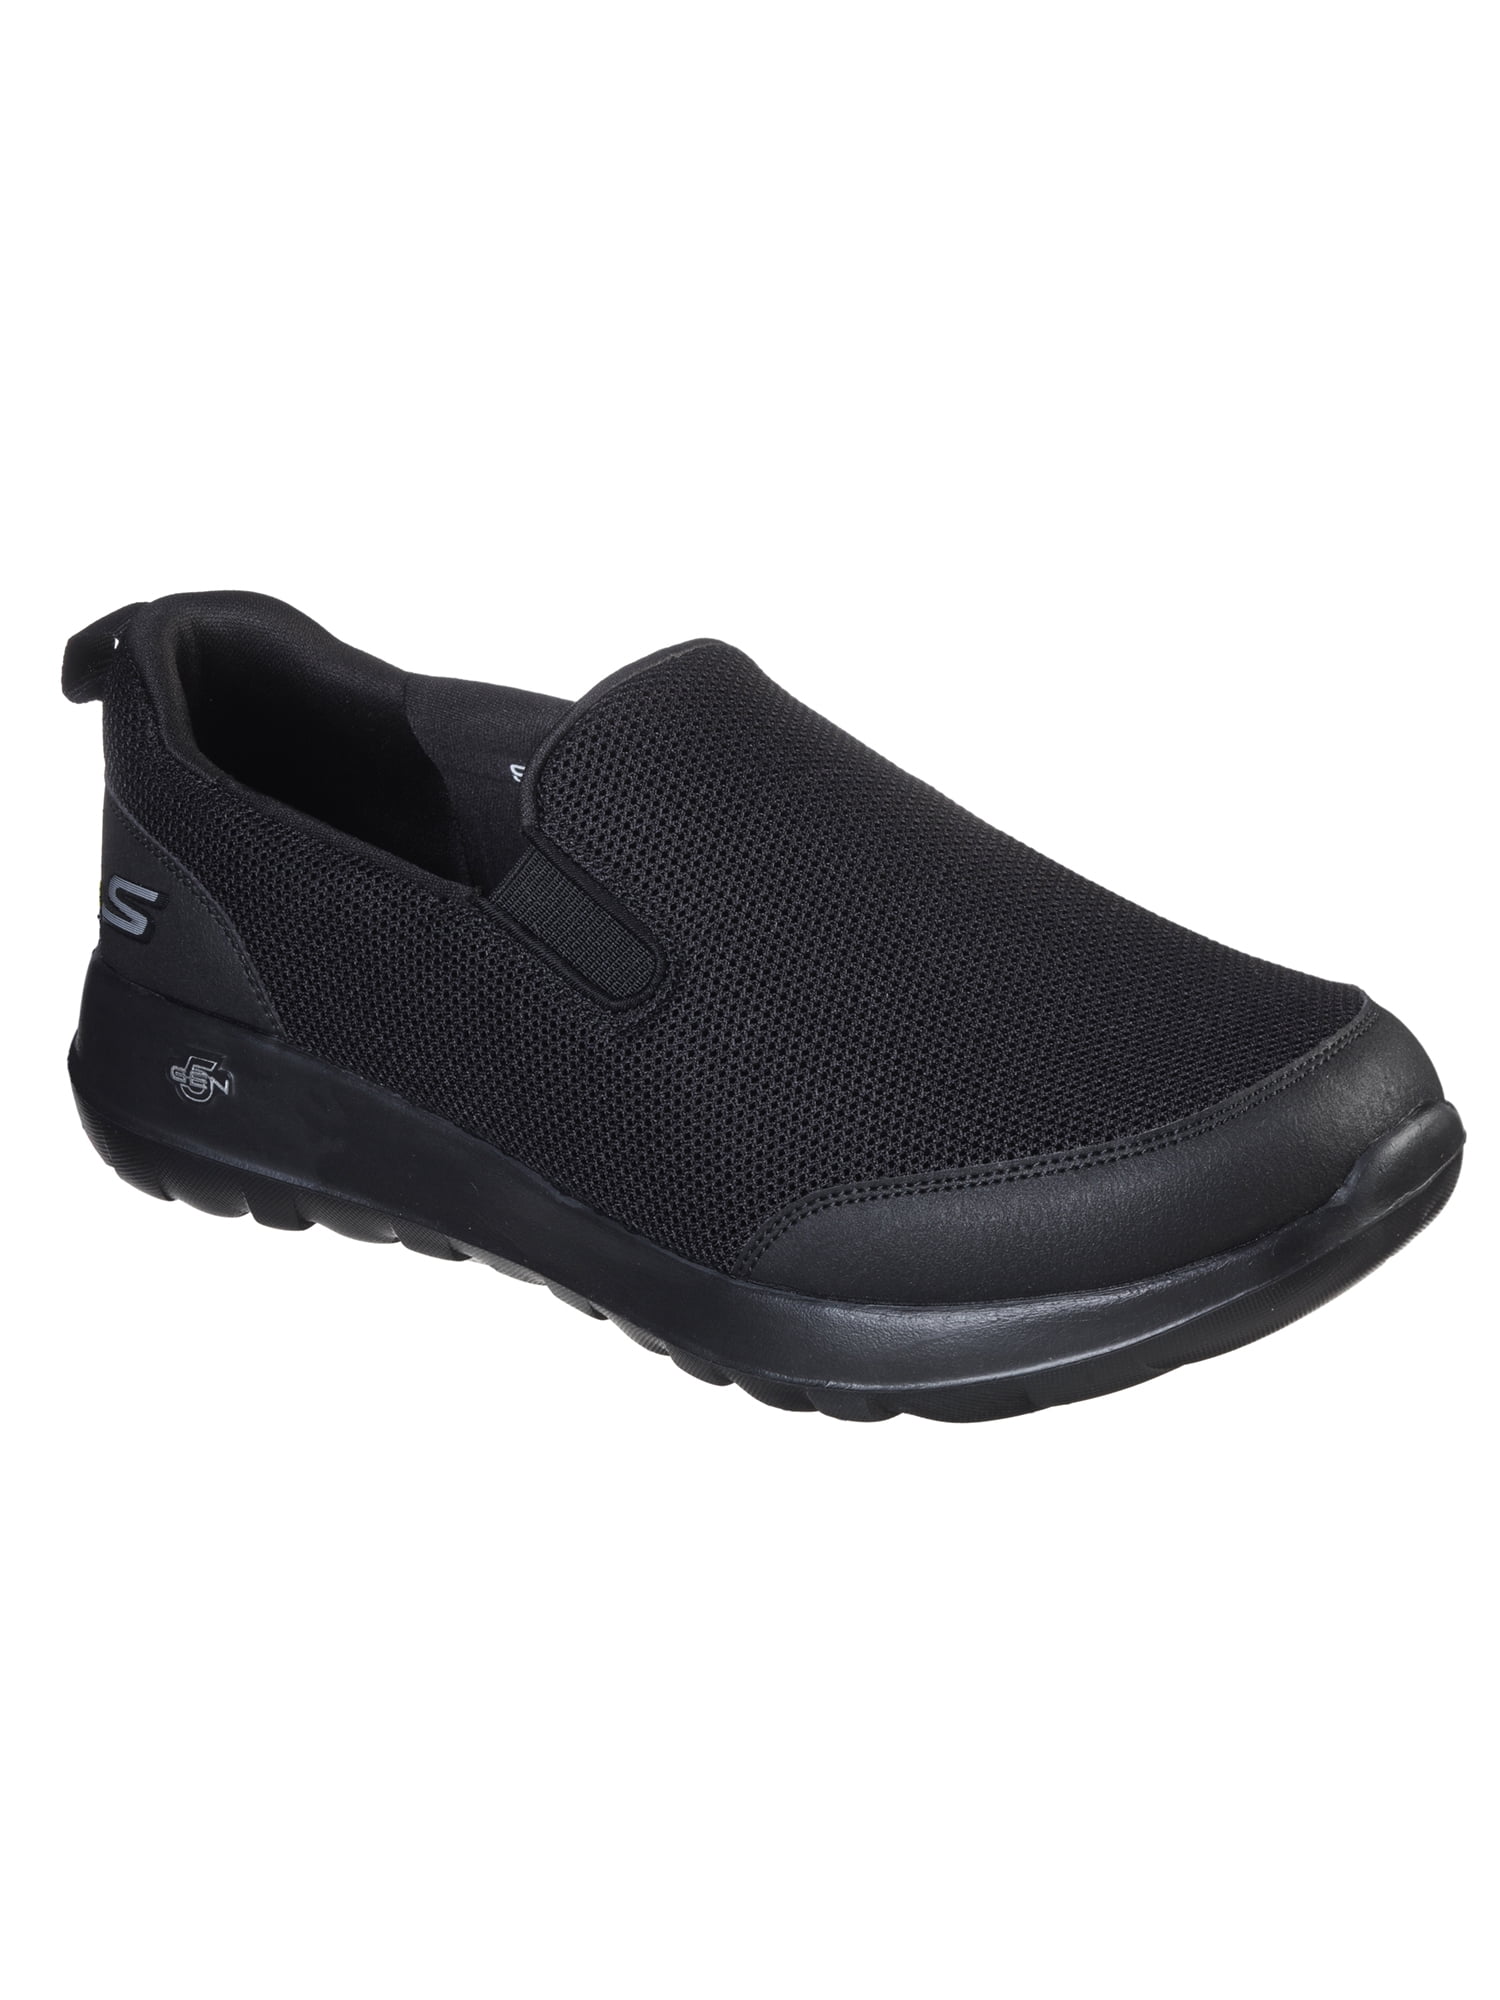 Skechers Men's Go Walk Max Clinched Slip-on Comfort Sneaker (Wide Width ...